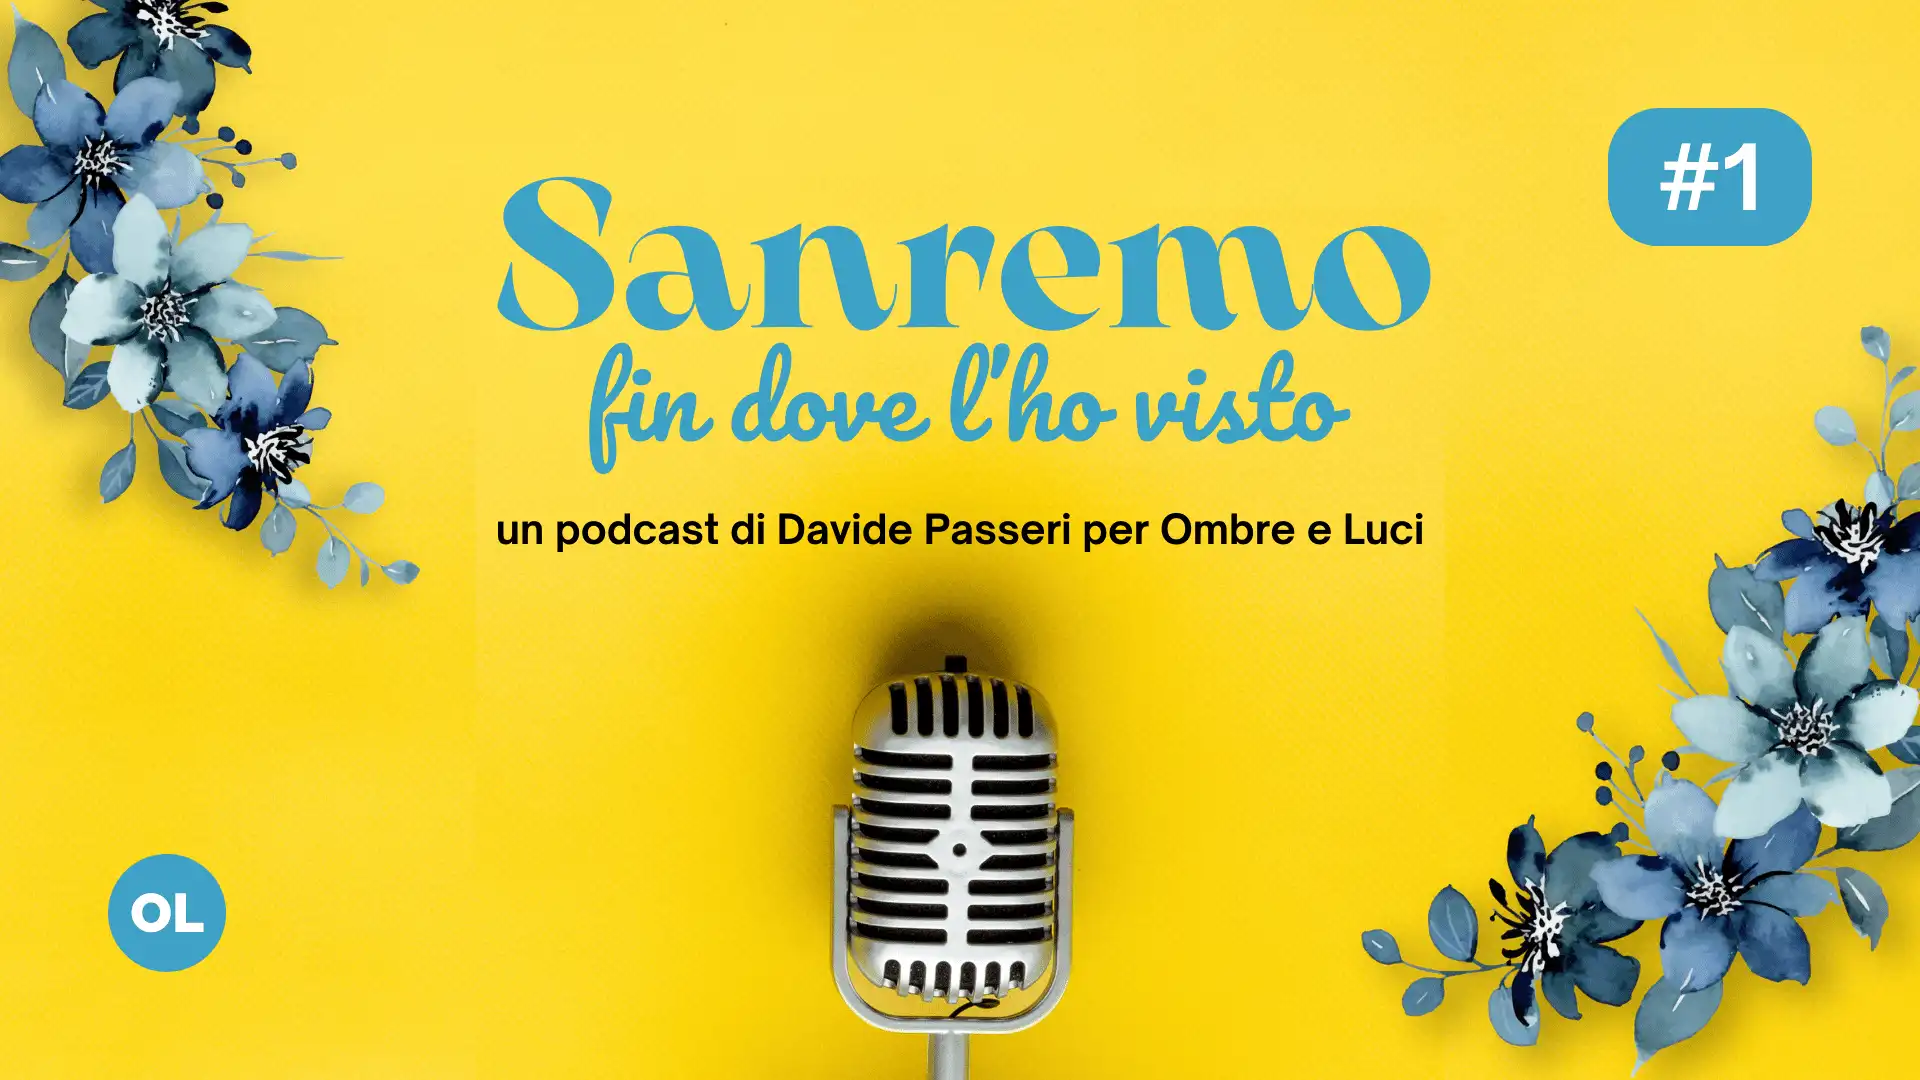 Sanremo fin dove l'ho visto - Davide Passeri - Podcast - Ombre e Luci